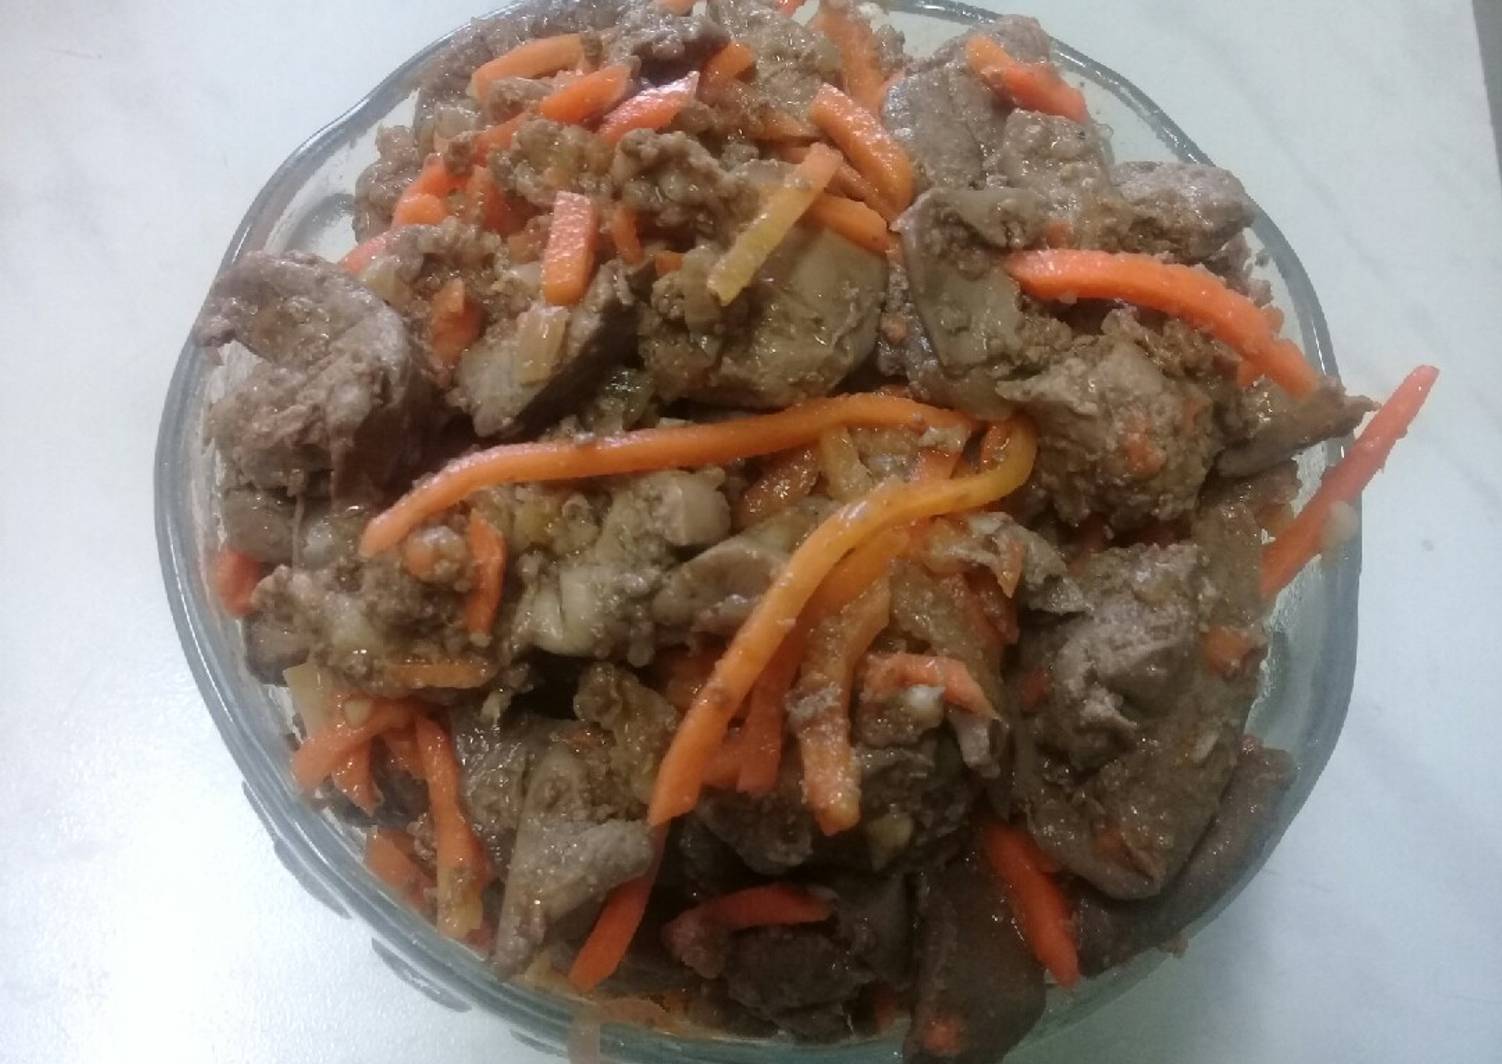 Салат из куриной печени и корейской моркови рецепт с фото очень вкусный